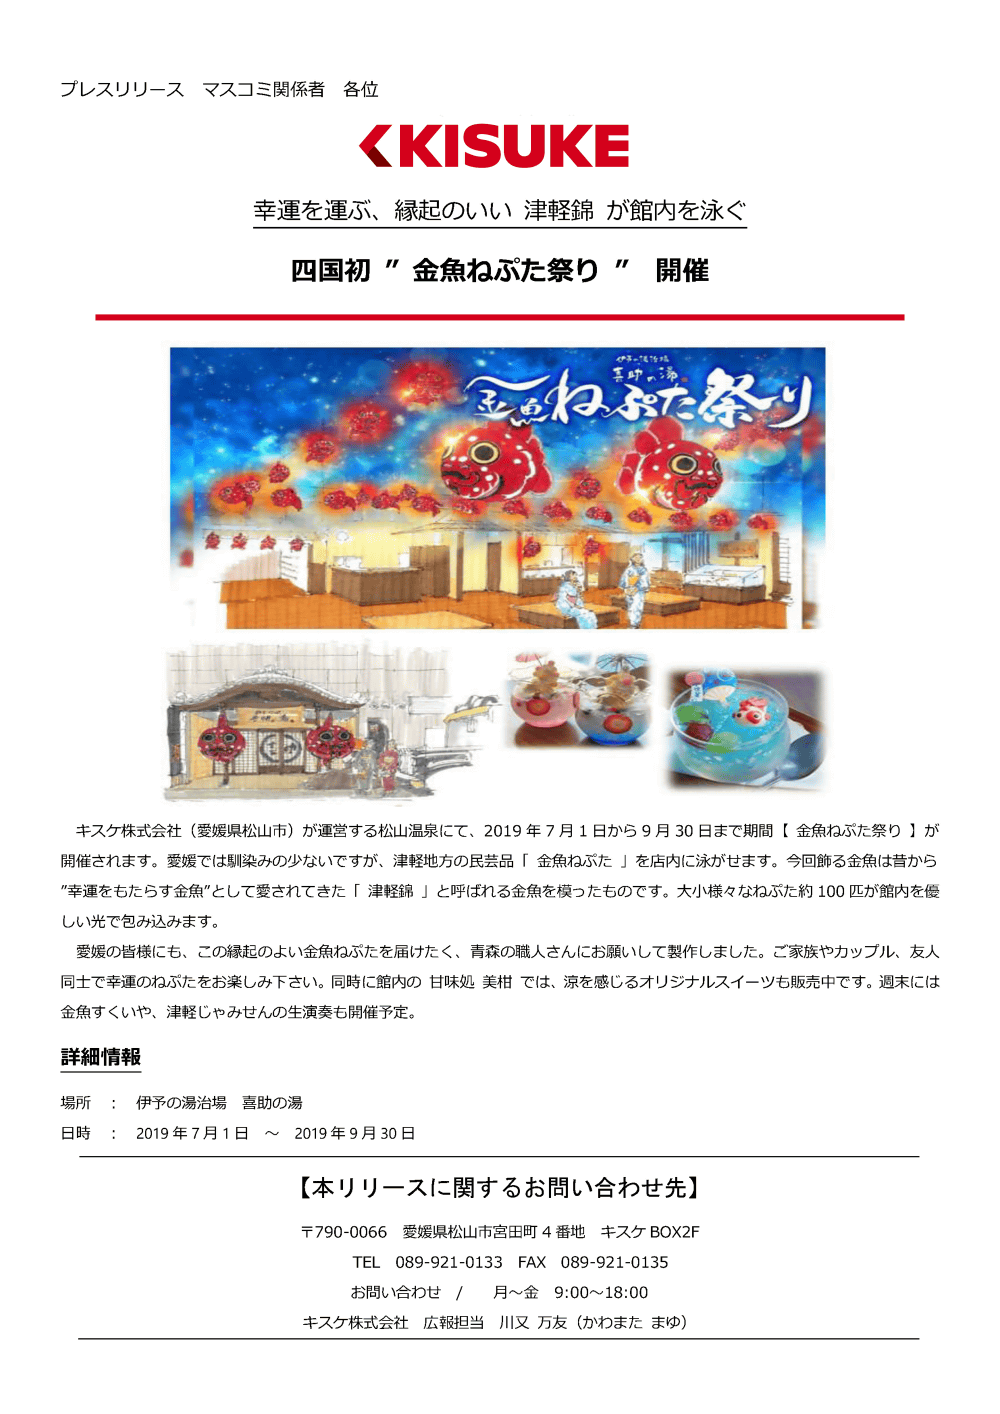 キスケ株式会社（愛媛県松山市）が運営する松山温泉にて、2019年7月1日から9月30日まで期間「金魚ねぷた祭り」が開催されます。愛媛では馴染み少ないですが、津軽地方の民芸品「金魚ねぷた」を店内に泳がせます。今回飾る金魚は昔から「幸運をもたらす金魚」として愛されてきた「津軽錦」と呼ばれる金魚を模ったものです。大小様々なねぷた約100匹が館内を優しい光で包み込みます。愛媛の皆様にも、この縁起のよい金魚ねぷたを届けたく、青森の職人さんにお願いして製作しました。ご家族やカップル、友人同士で幸運のねぷたをお楽しみ下さい。同時に館内の甘味処美柑では、涼を感じるオリジナルスイーツも販売中です。週末には金魚すくいや、津軽じゃみせんの生演奏も開催予定。